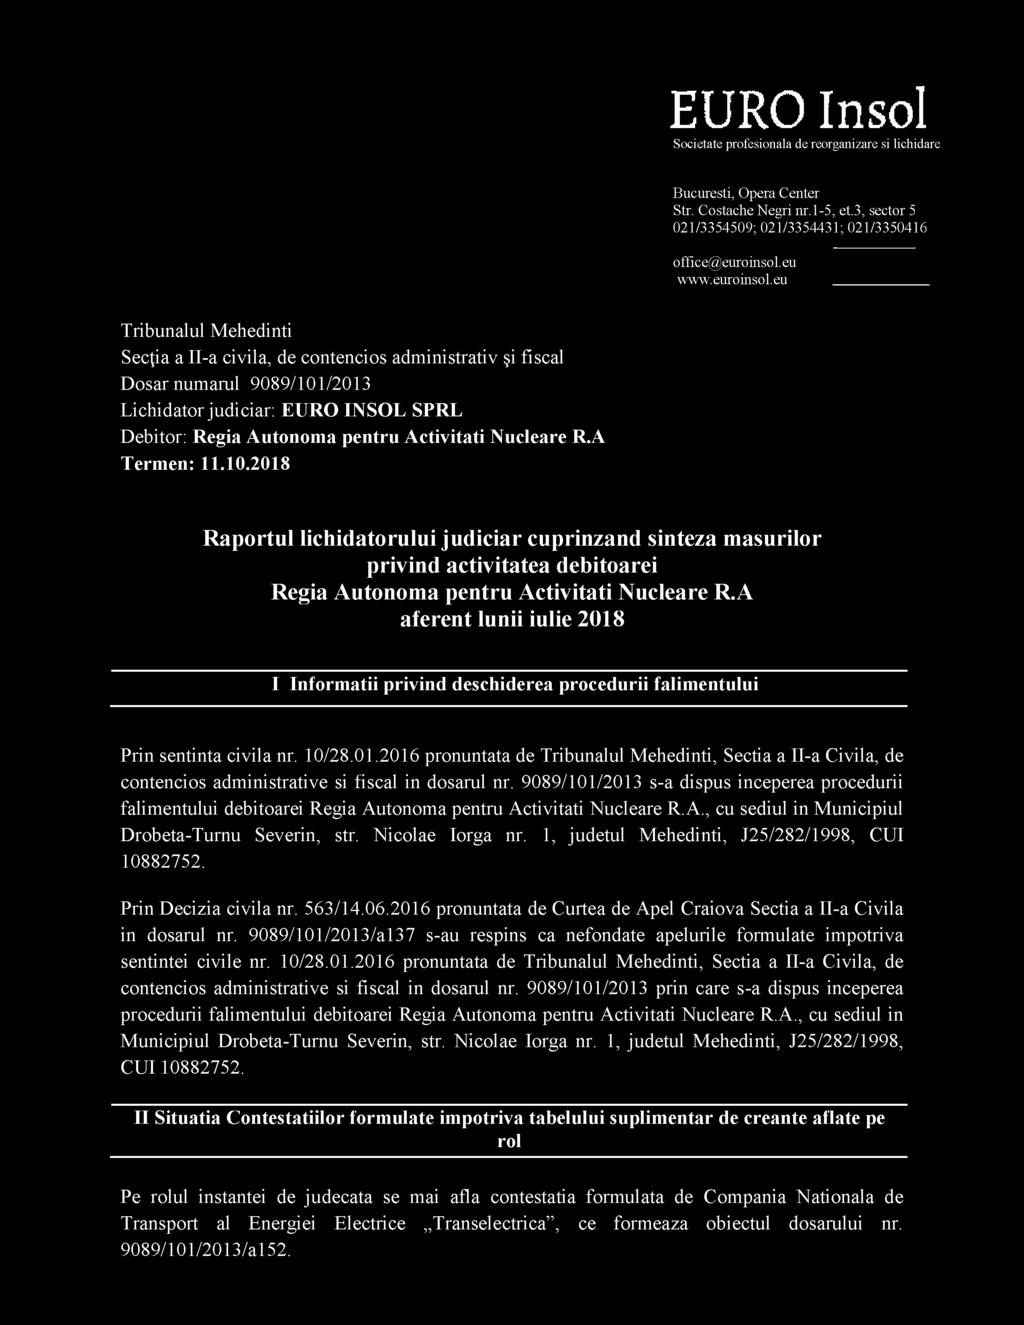 A Termen: 11.10.01 Raportul lichidatorului judiciar cuprinzand sinteza masurilor privind activitatea debitoarei Regia Autonoma pentru Activitati Nucleare R.